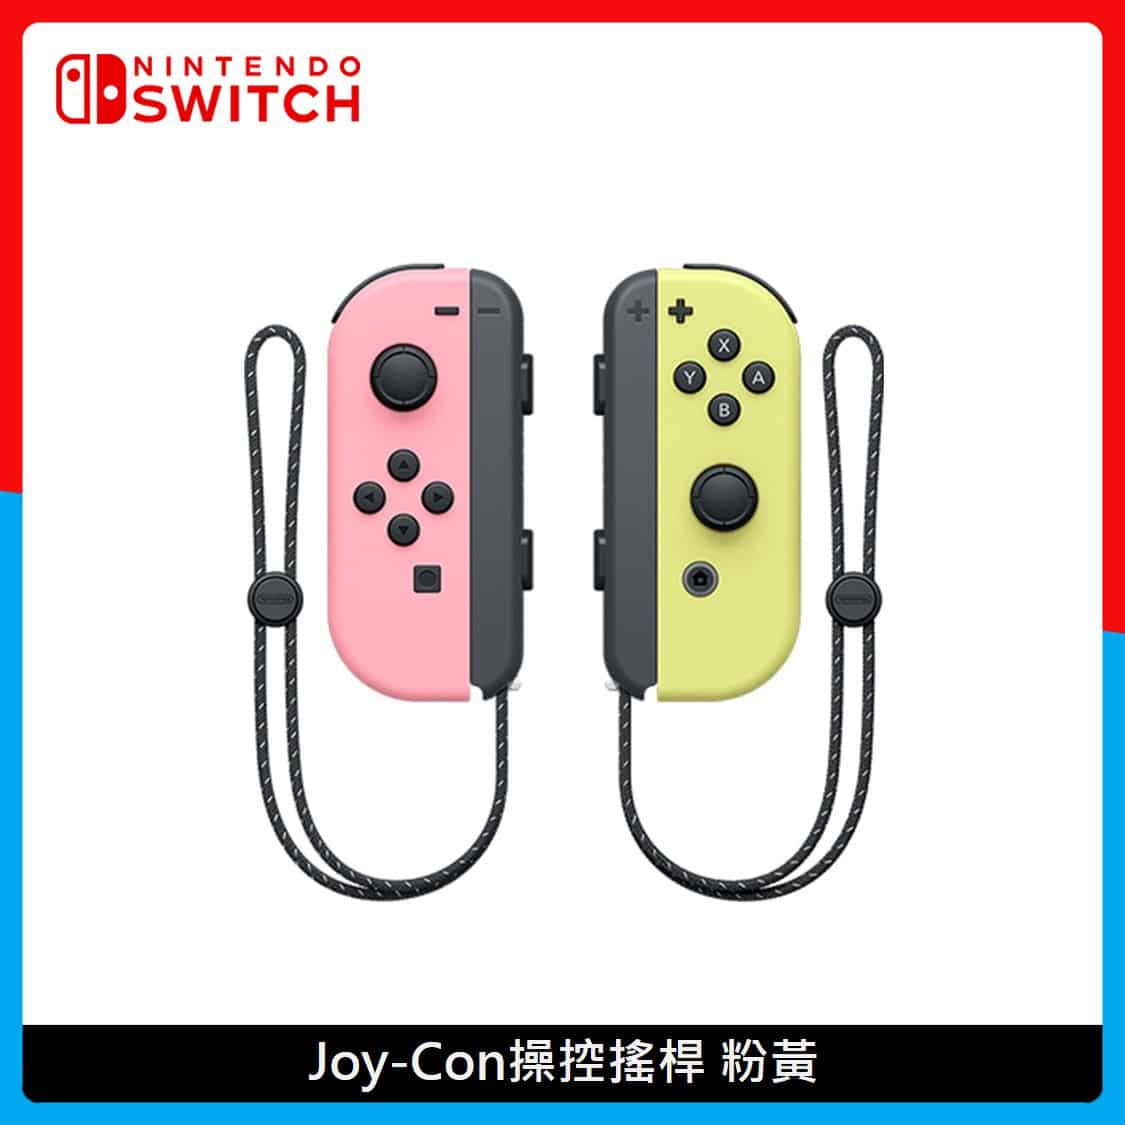 Nintendo Switch 任天堂Joy-Con 控制器組2色選| 法雅客網路商店